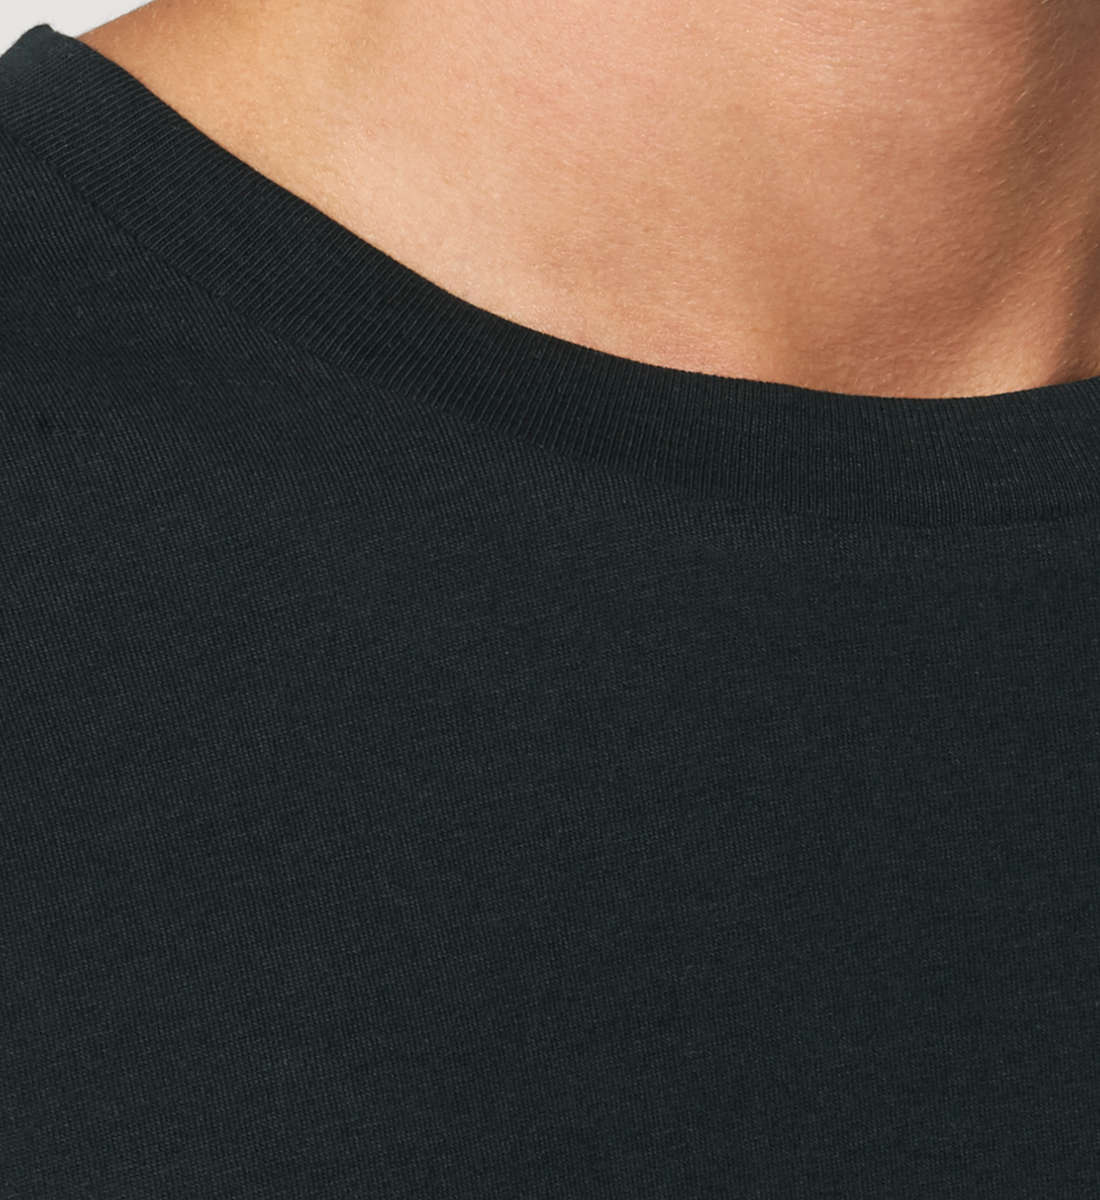 Schwarzes T-Shirt Unisex Relaxed Fit für Frauen und Männer bedruckt mit dem Design der Roger Rockawoo Kollektion Guitar too old to rocknroll